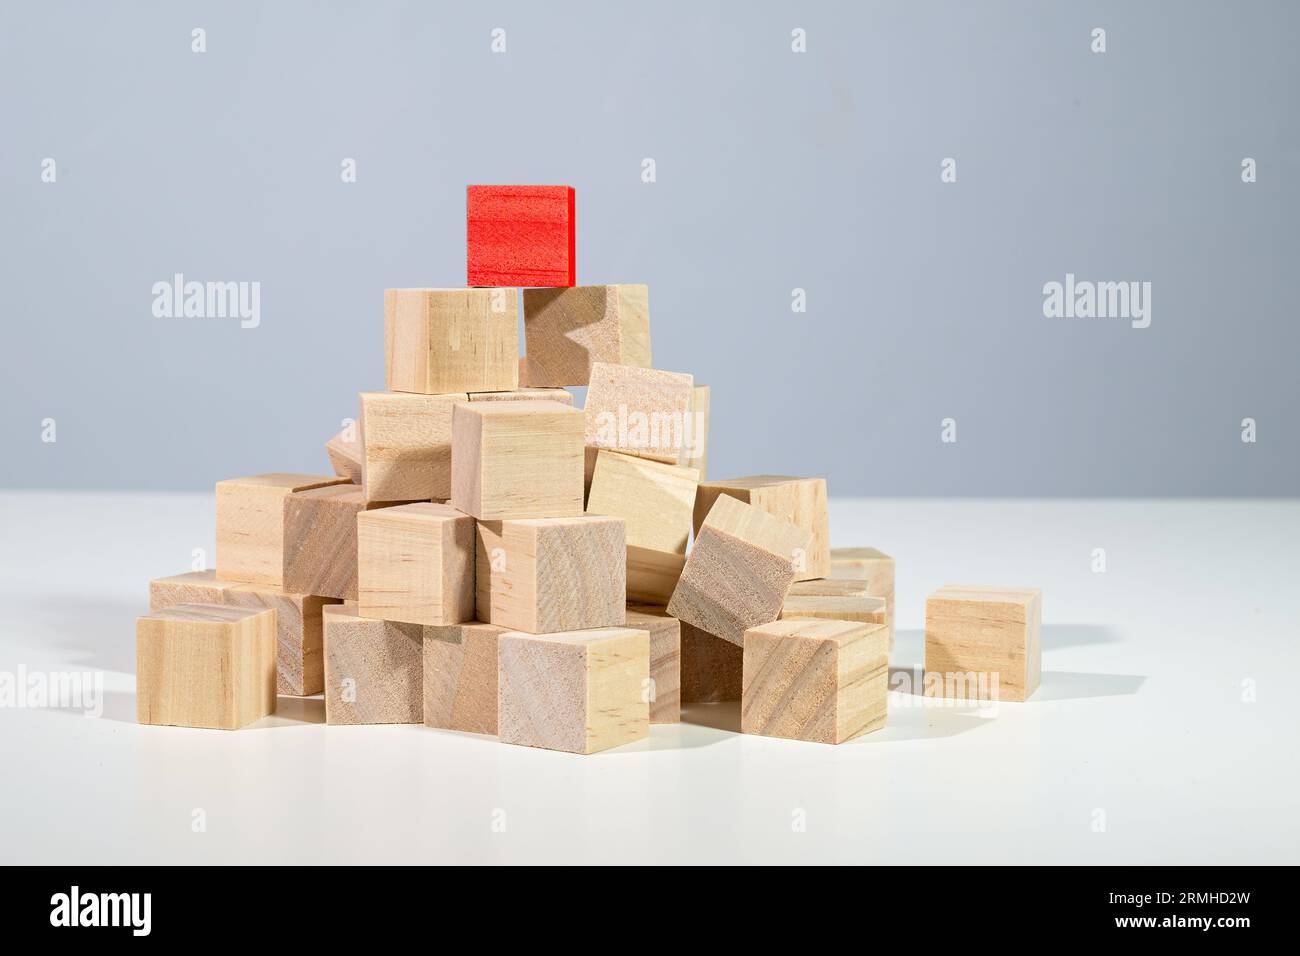 Cube rouge debout sur le dessus d'un tas de cubes en bois légers, concept pour les affaires, la carrière et le succès, fond gris avec espace de copie Banque D'Images